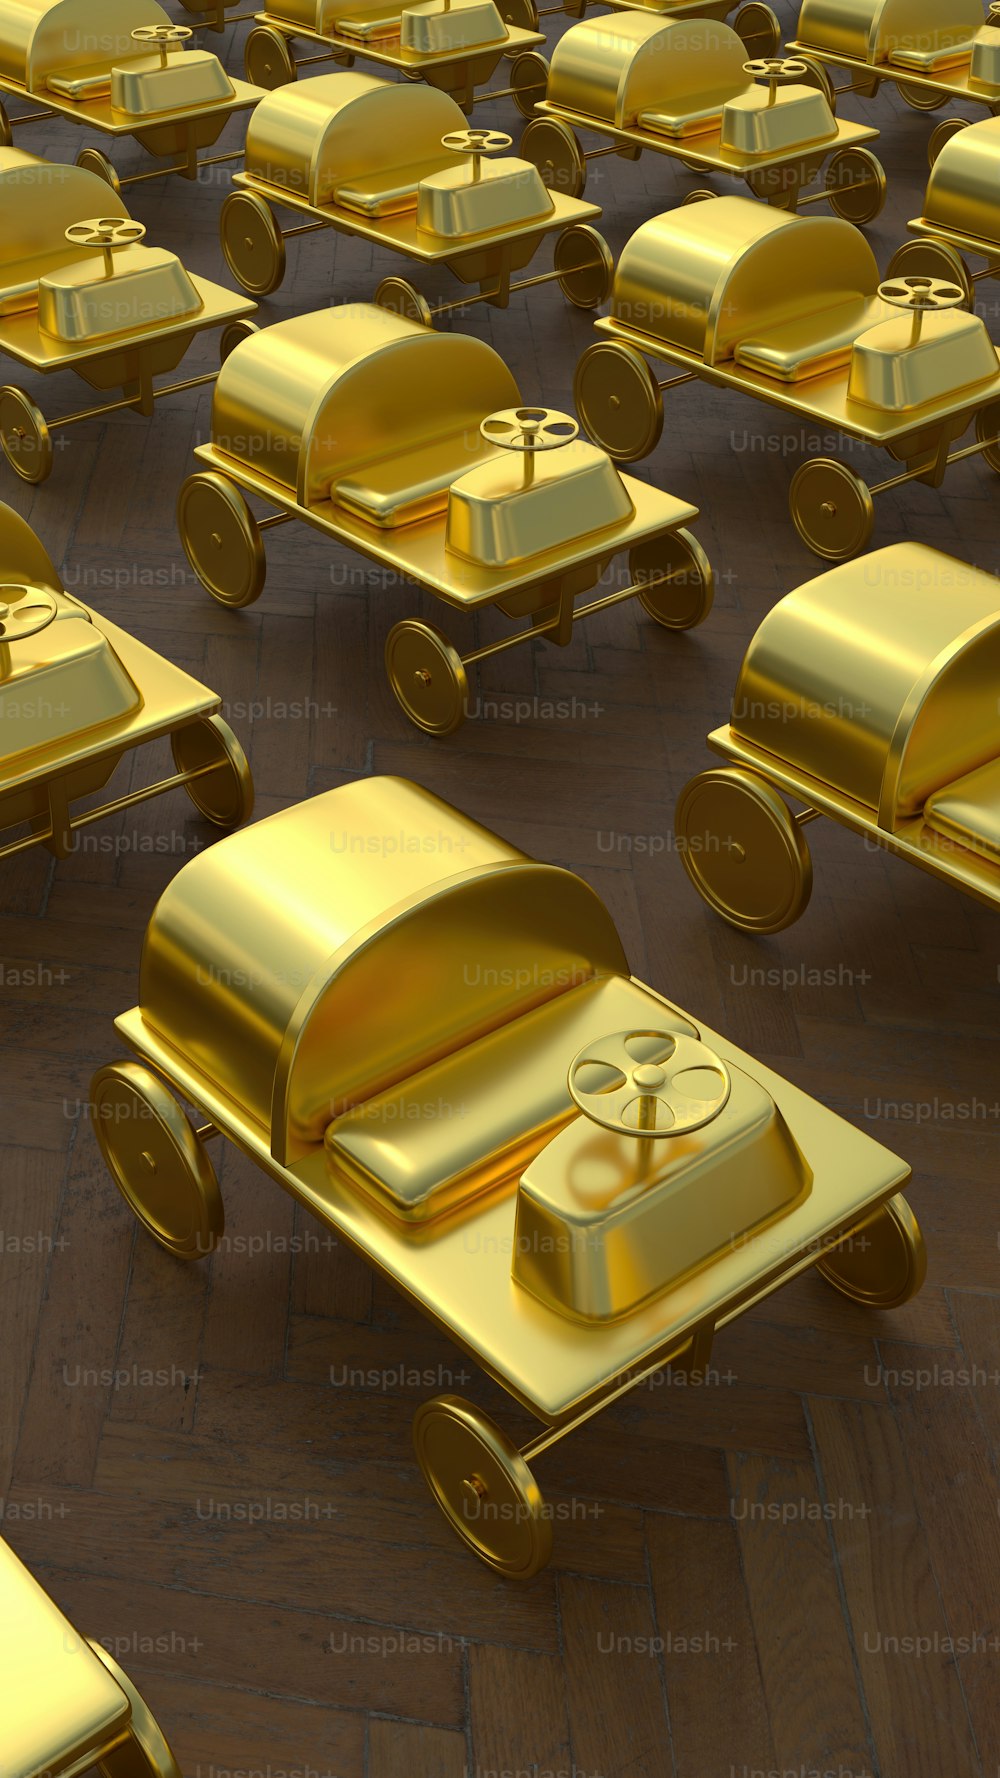 Eine große Gruppe goldener Spielzeugautos sitzt auf einem Holzboden